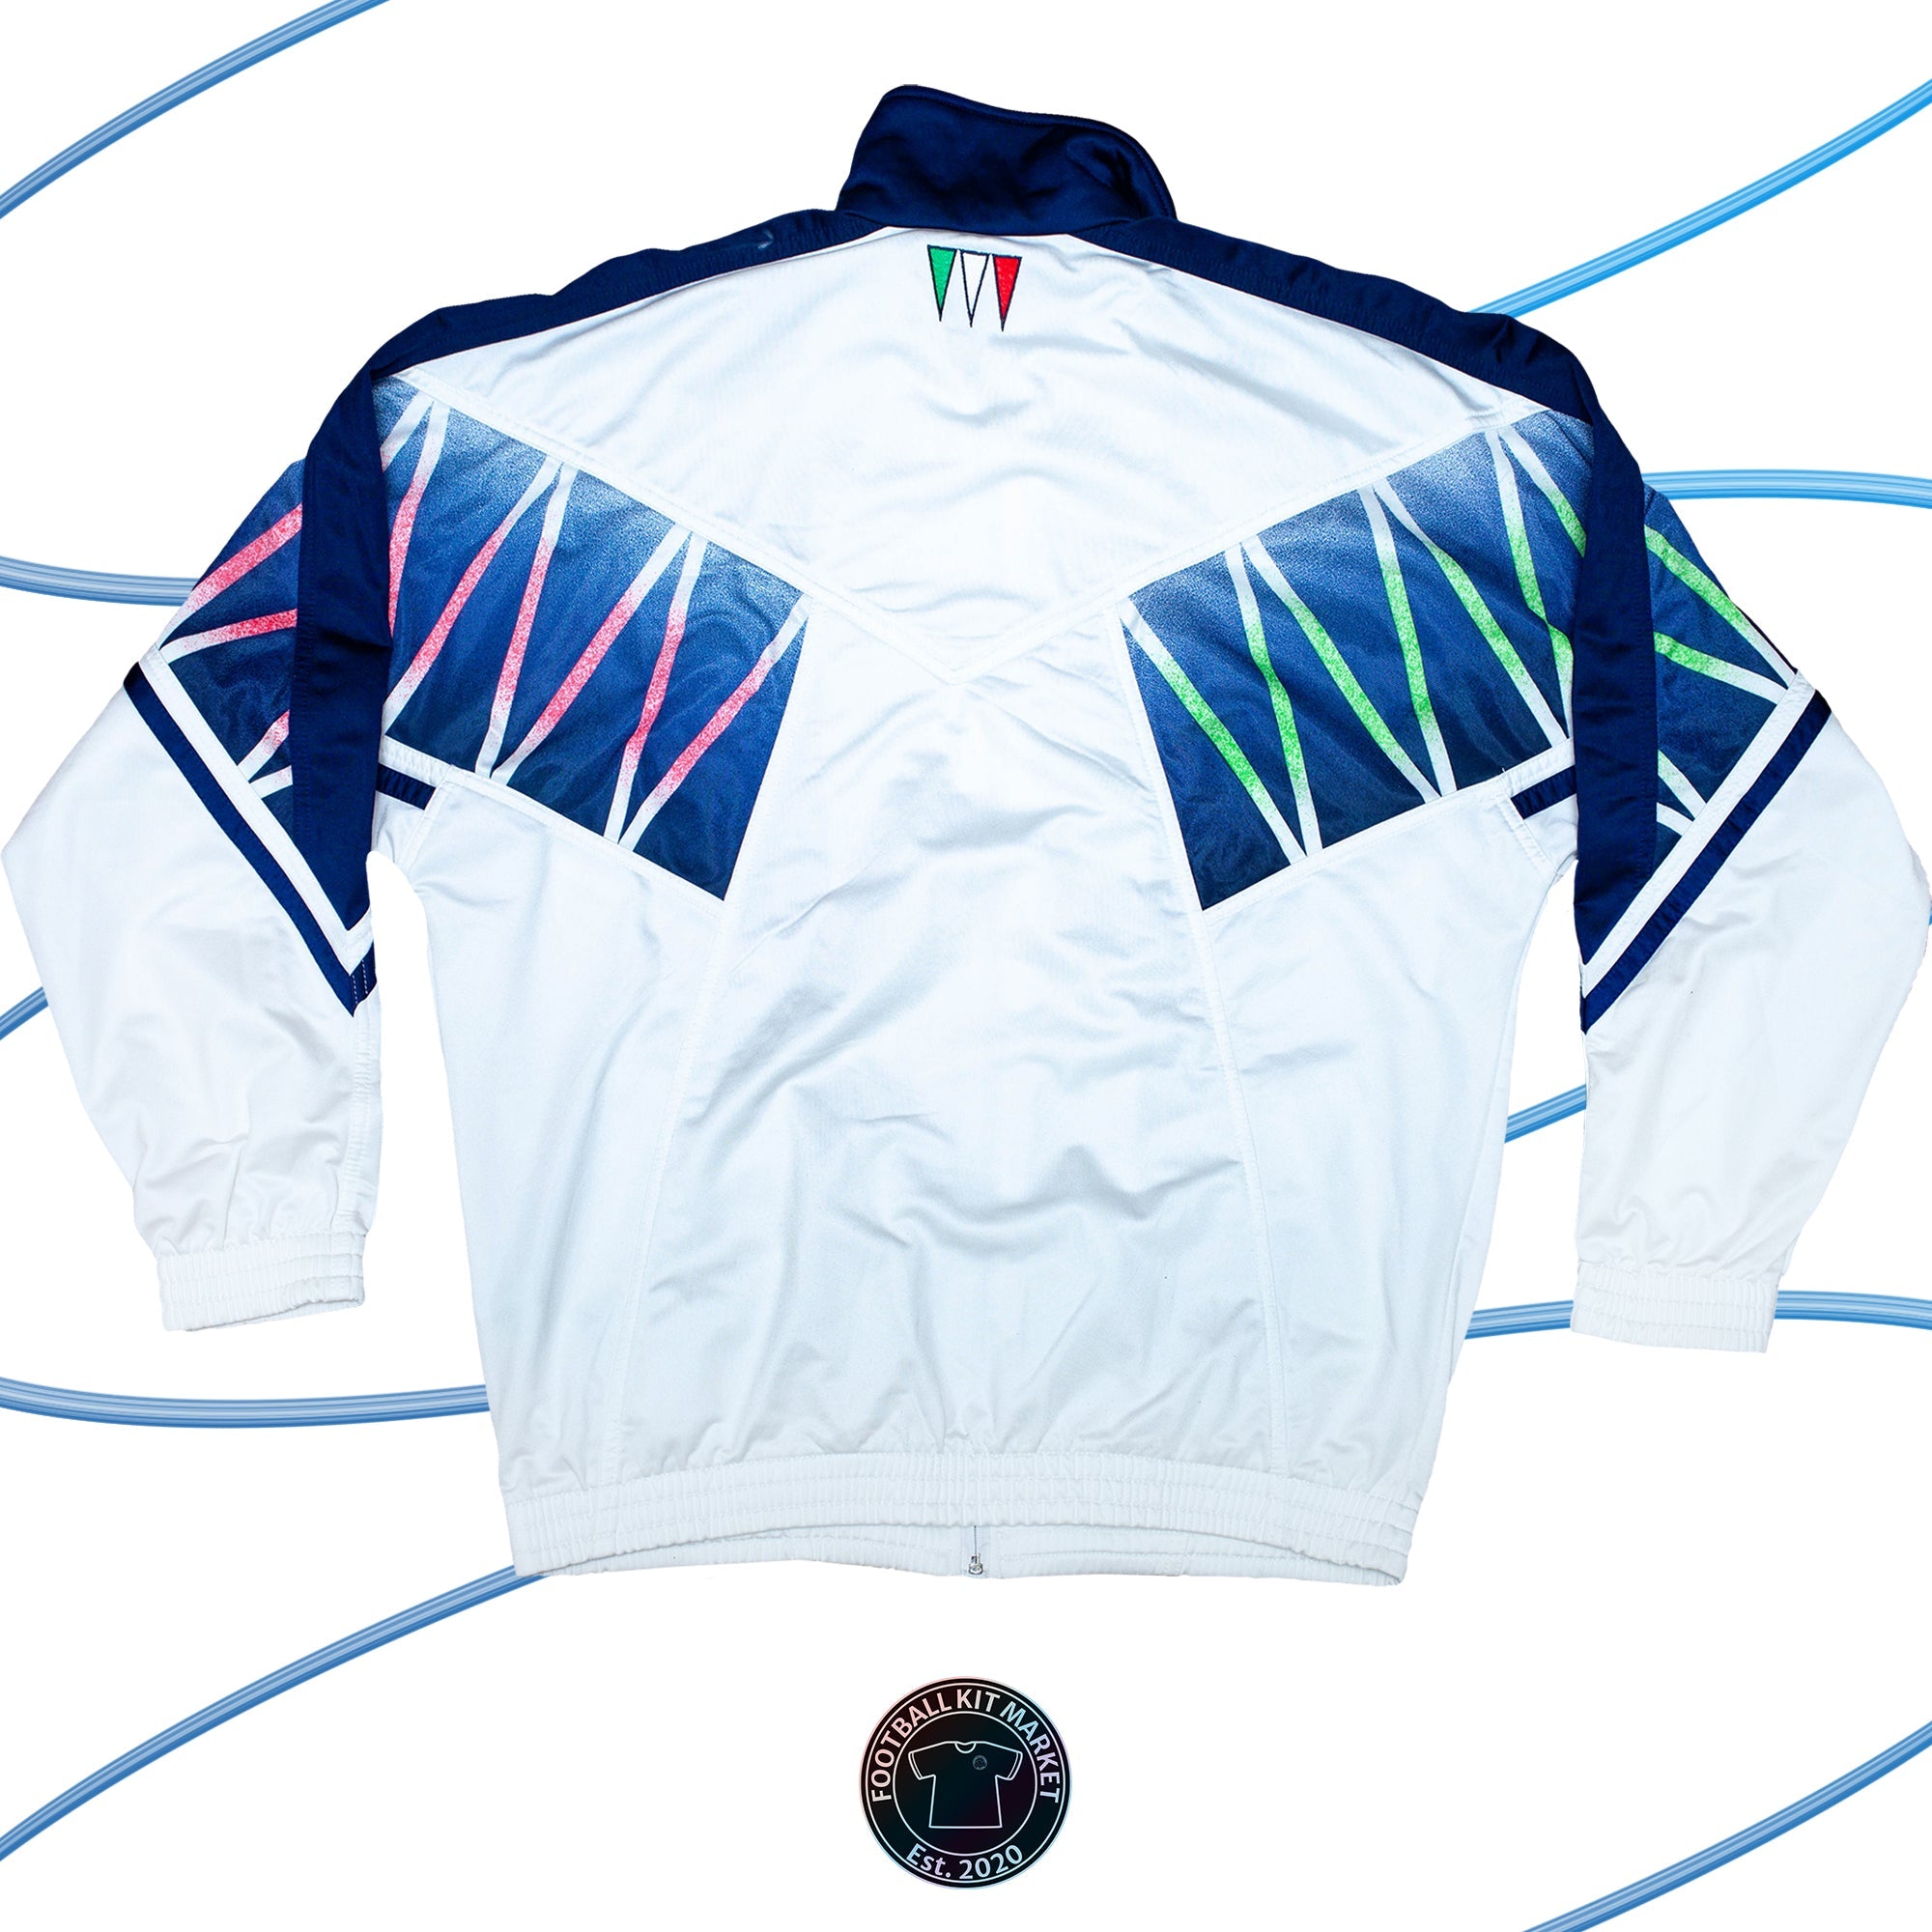 Genuine ITALY Jacket (1994) - DIADORA (L) - Product Image from Football Kit Market